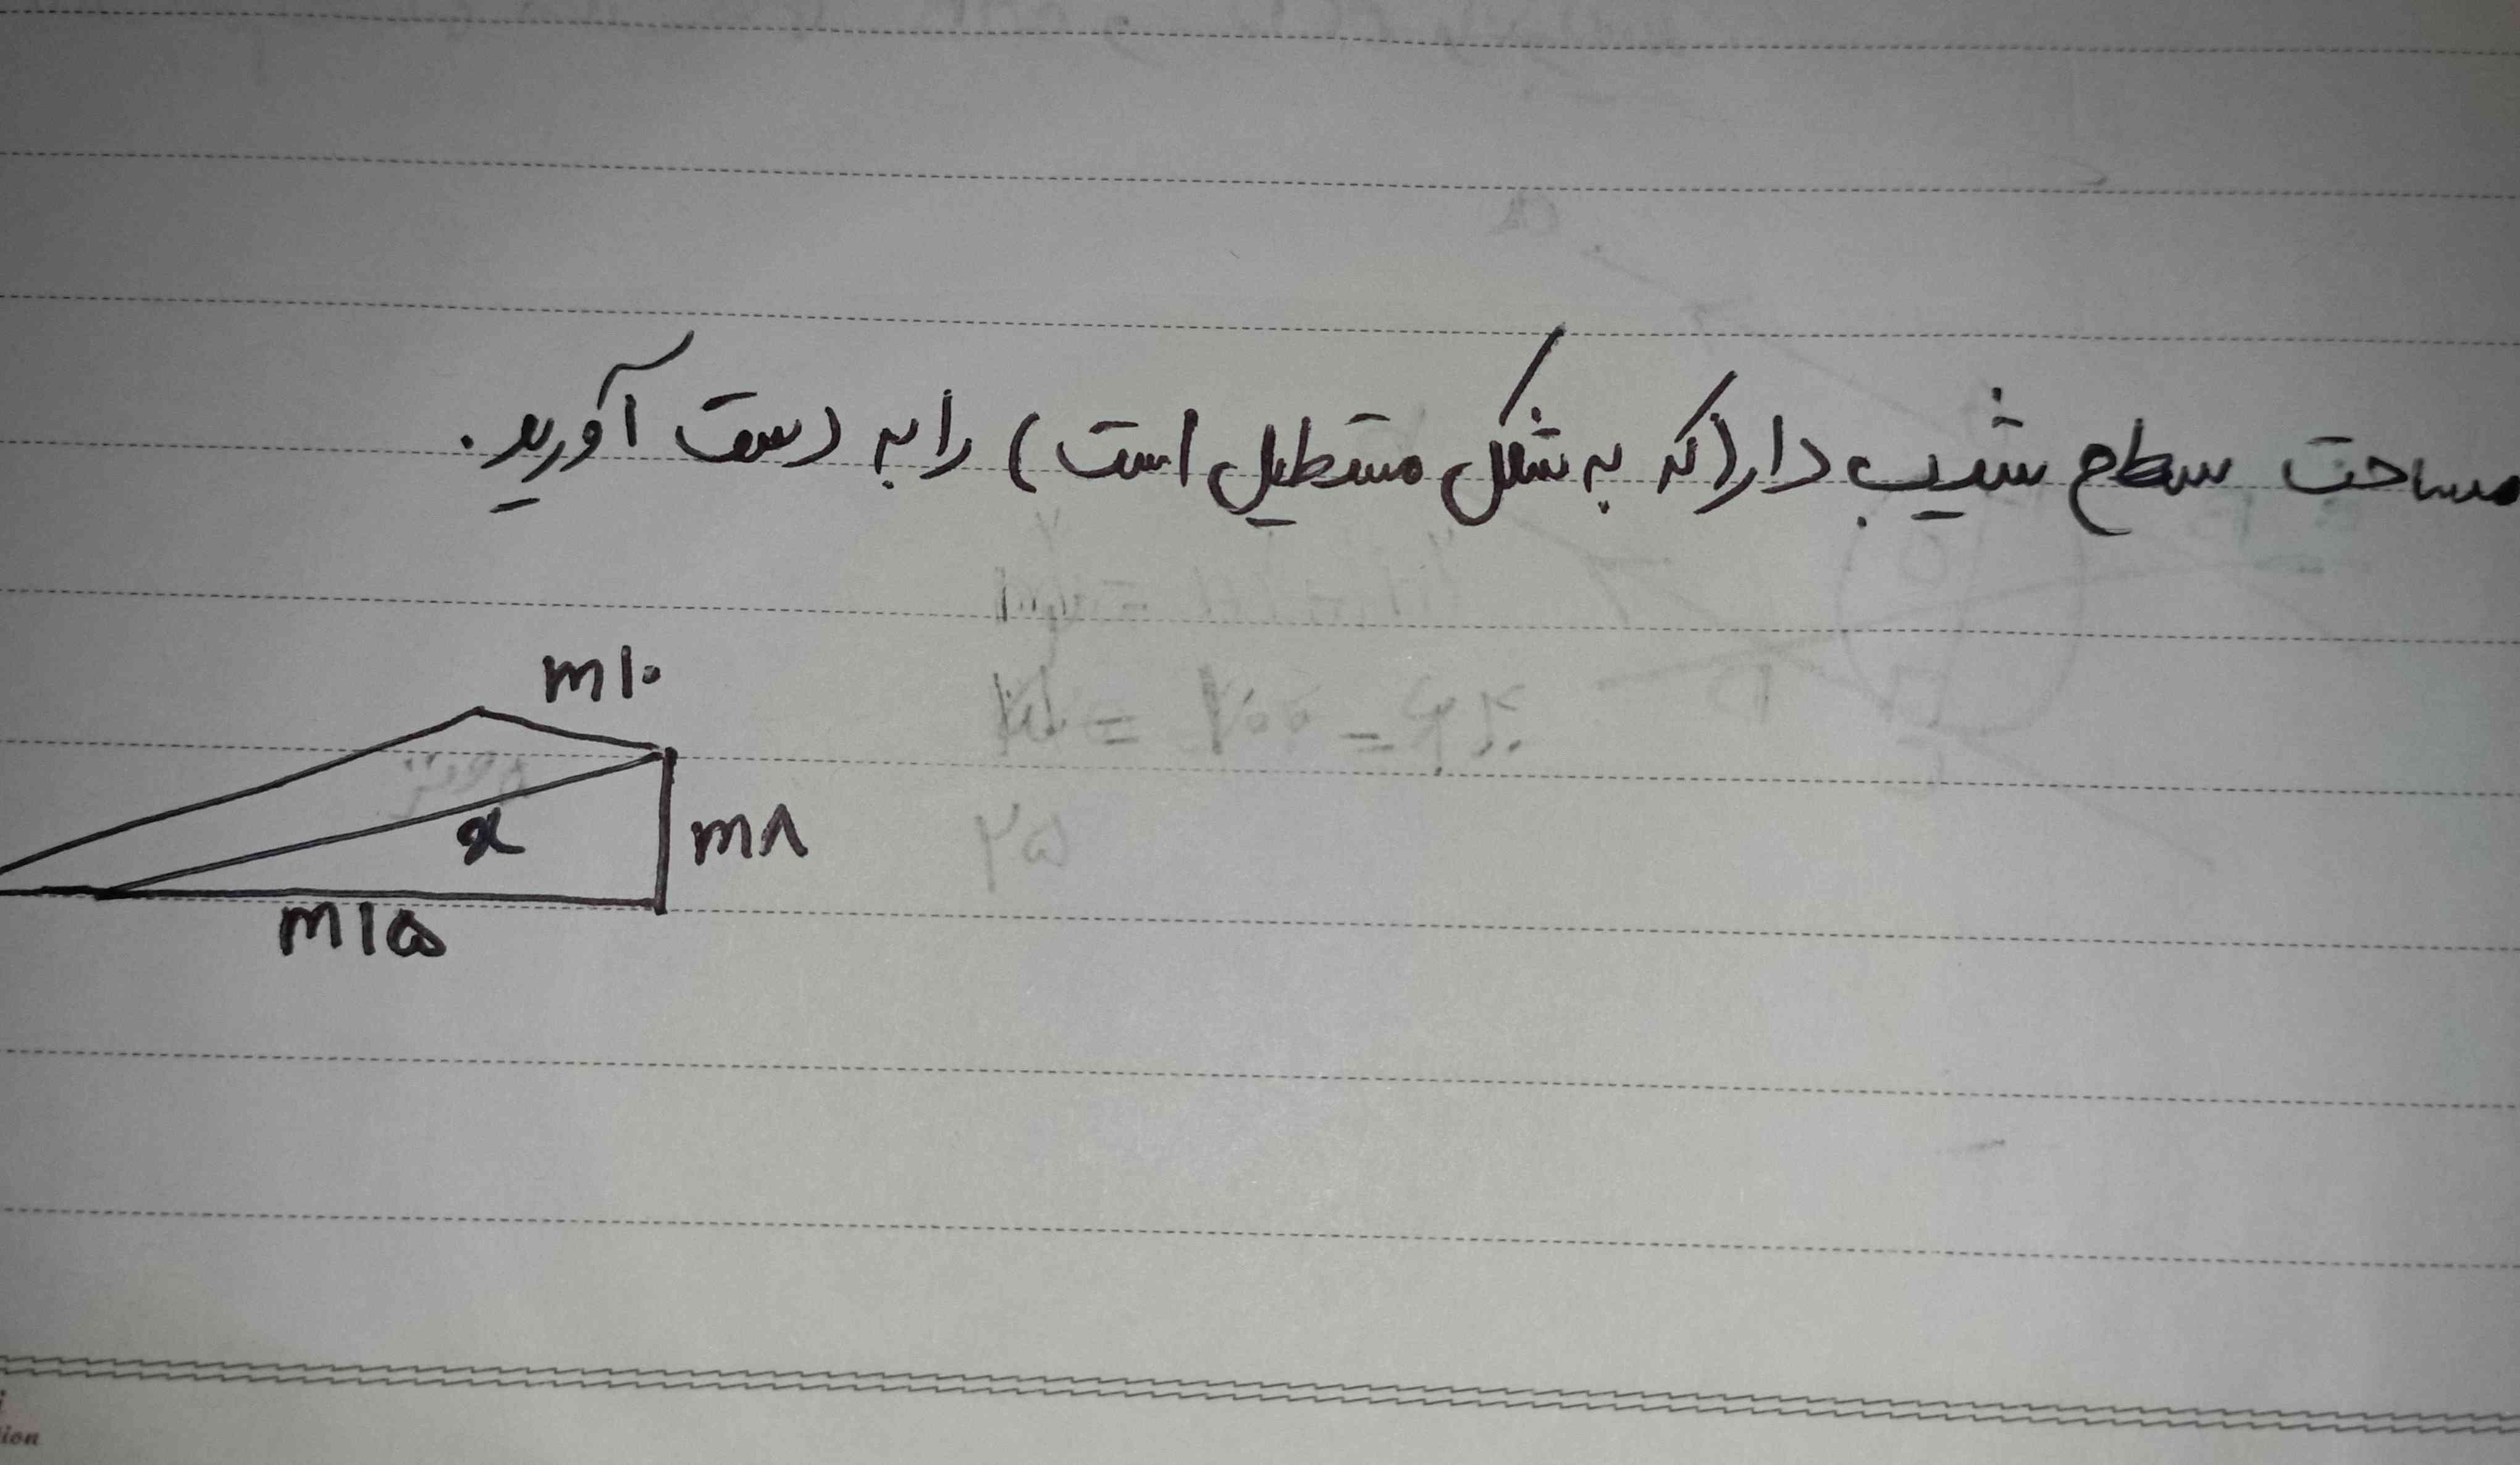 سلام معلم ما یه تکلیف برای عید نوروز داده اما من بلد نیستم اینو حل کنم میشه کمکم کنید تاج میدم